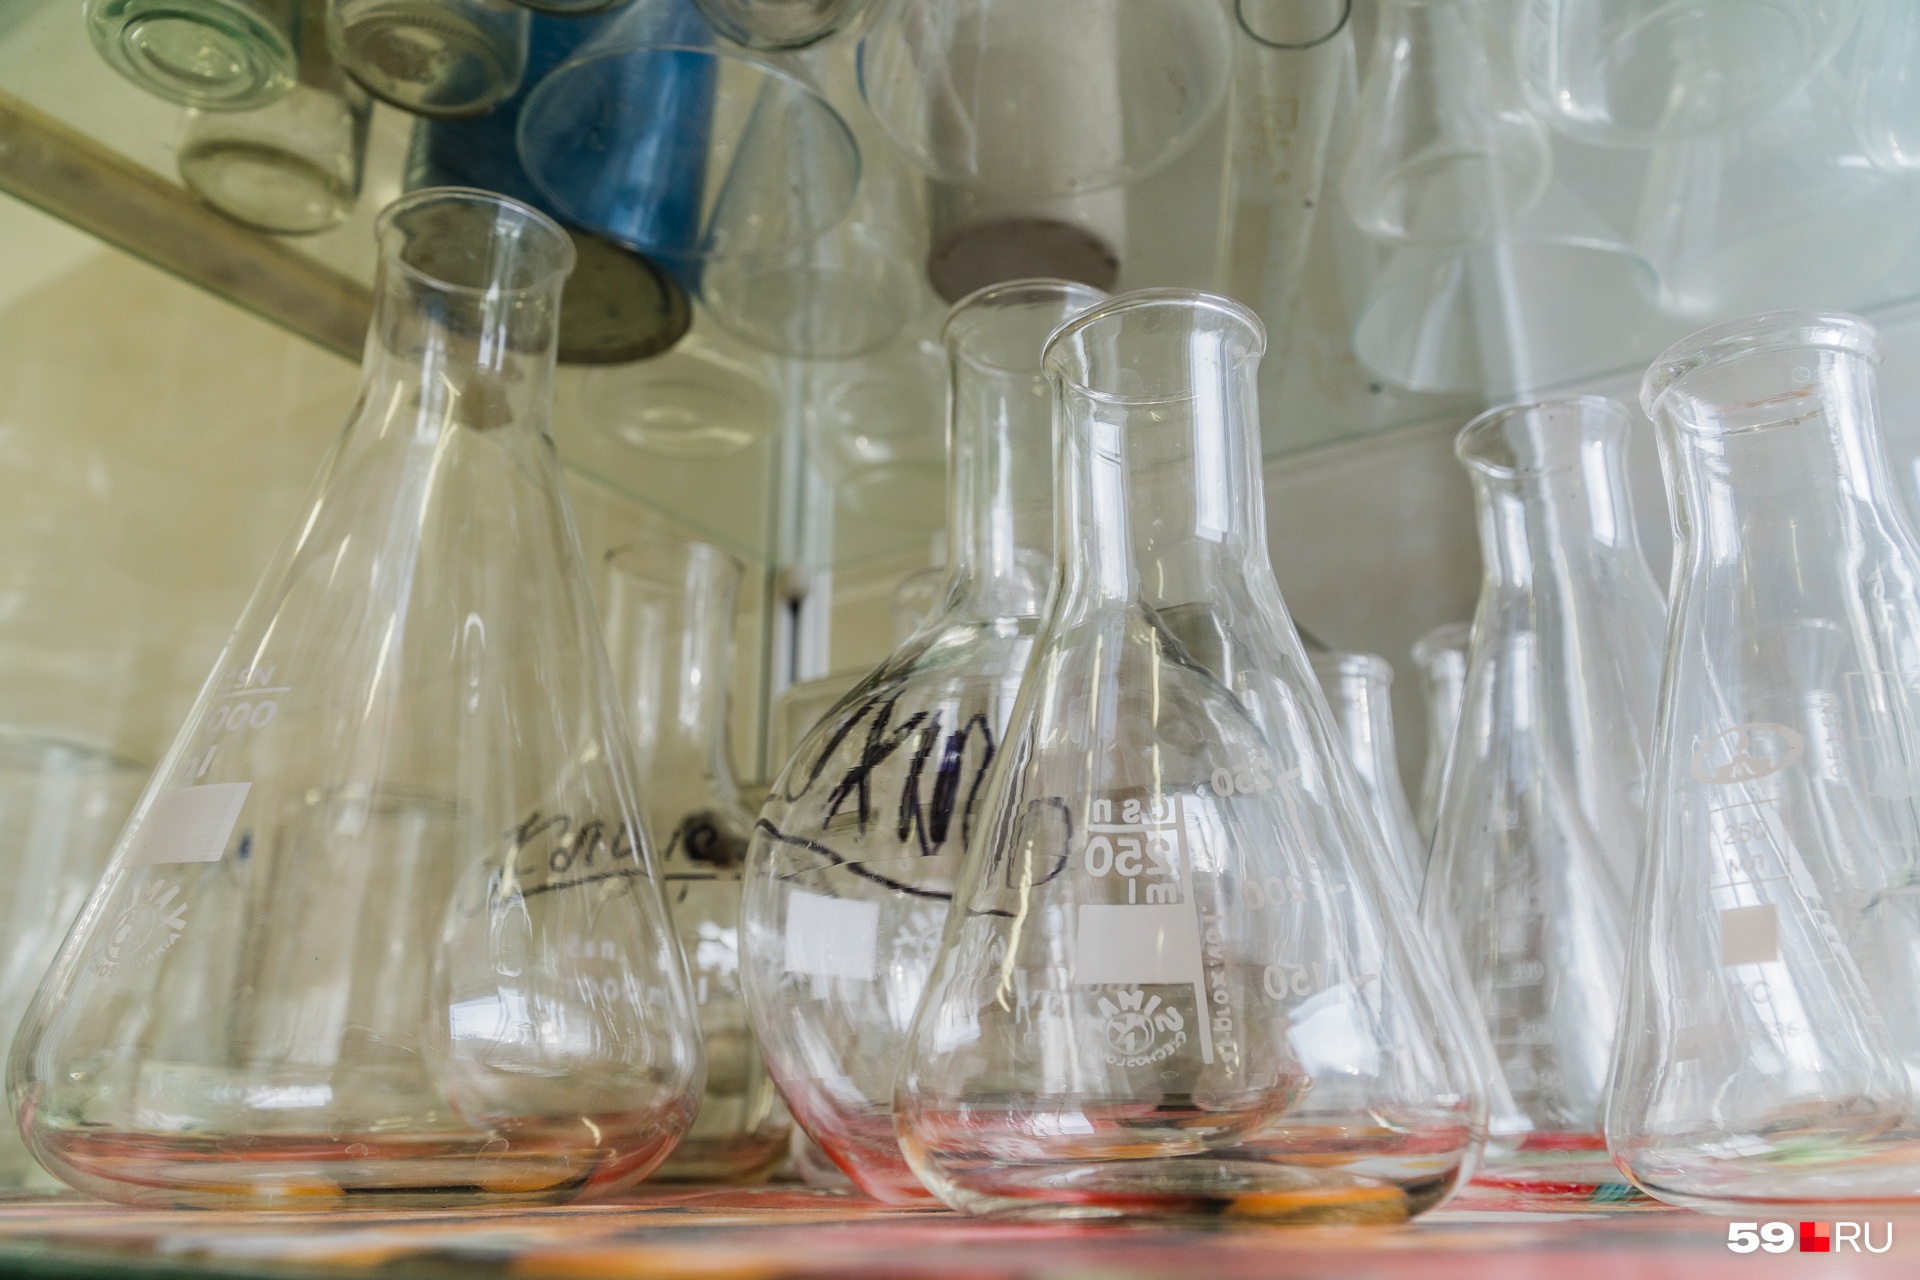 Стерильная химическая посуда необходима для опытов в лаборатории микробиологии и вирусов